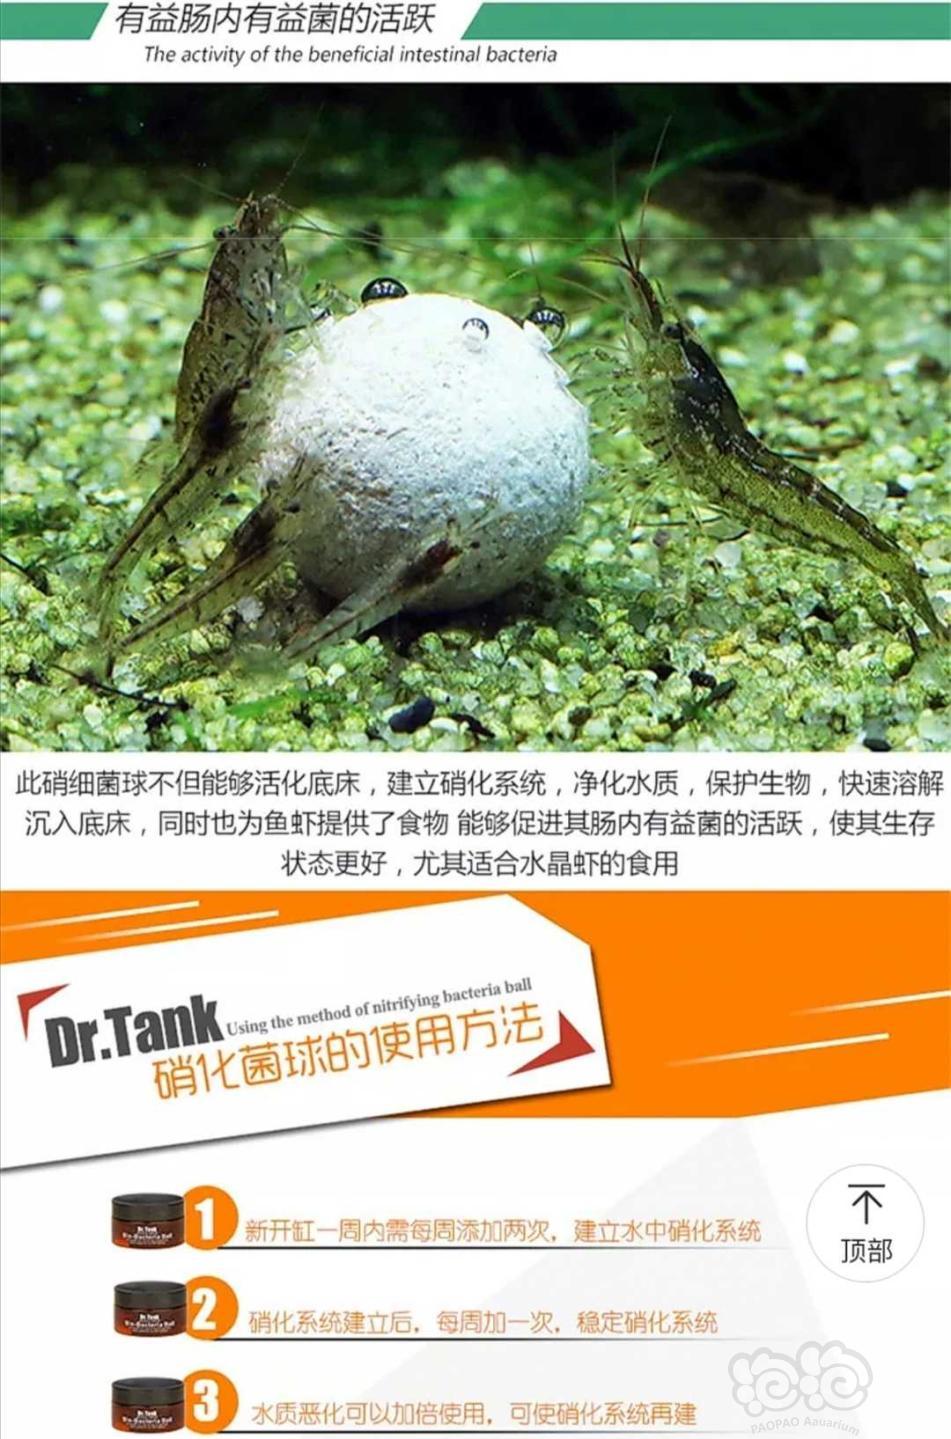 【用品】2019-10-30#RMB拍卖坦克二代硝化细菌球三粒装*3盒-图2